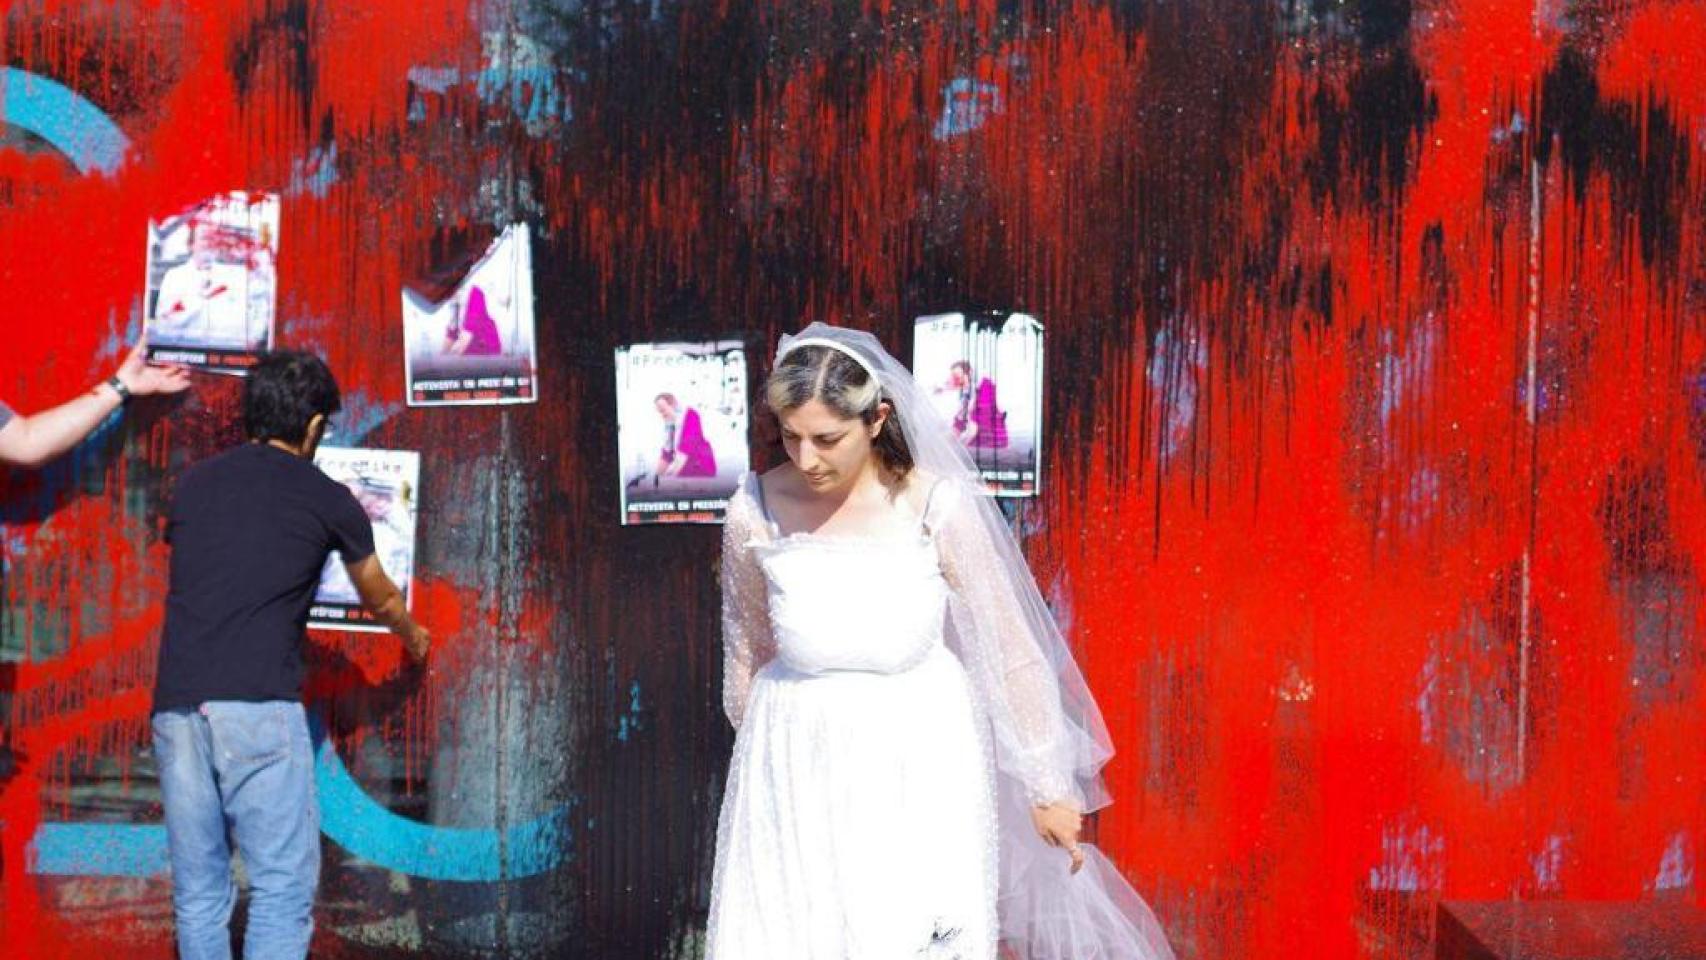 Una de las activistas detenidas, vestida de novia durante la protesta.